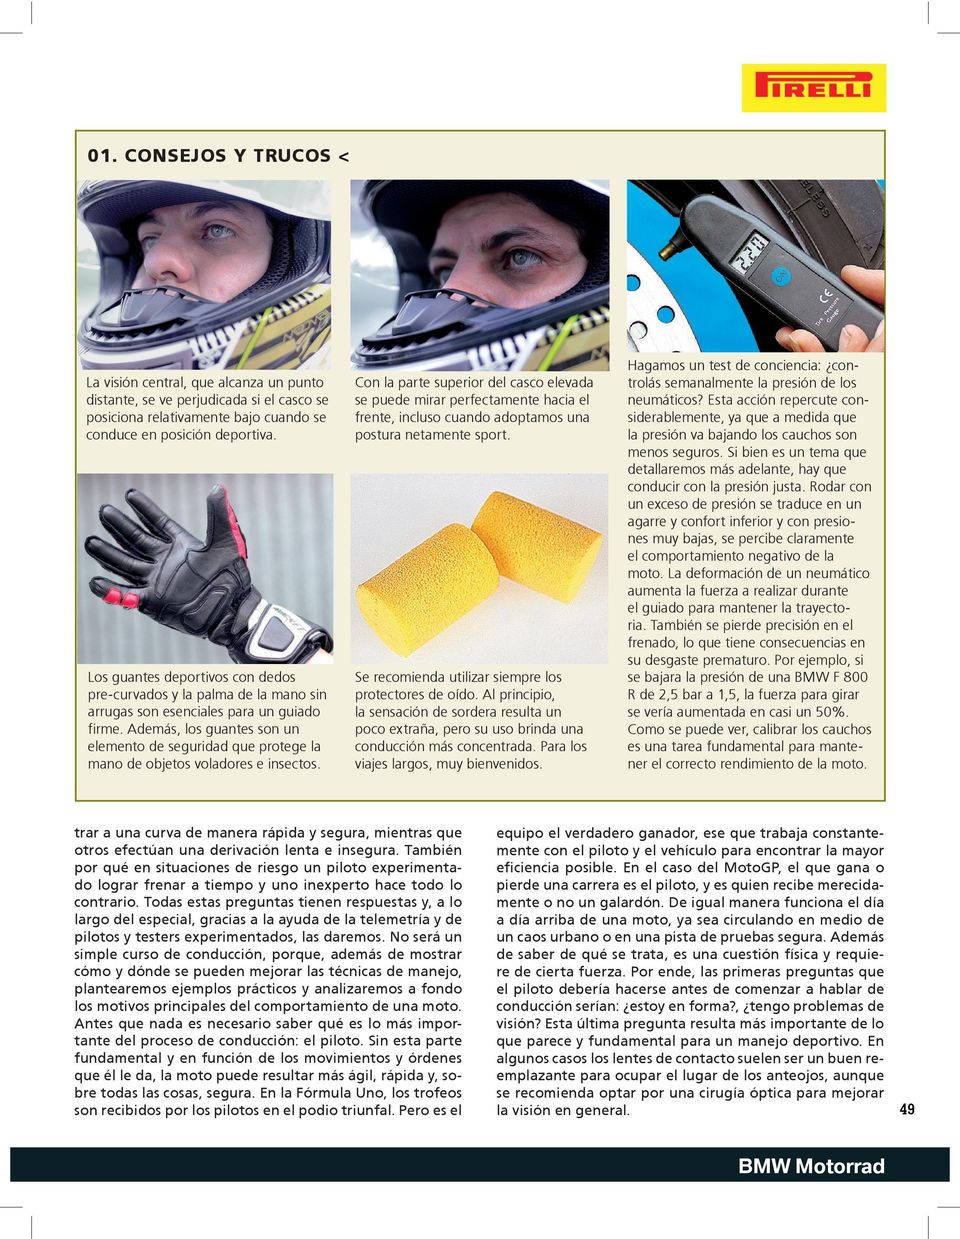 Además, los guantes son un elemento de seguridad que protege la mano de objetos voladores e insectos.